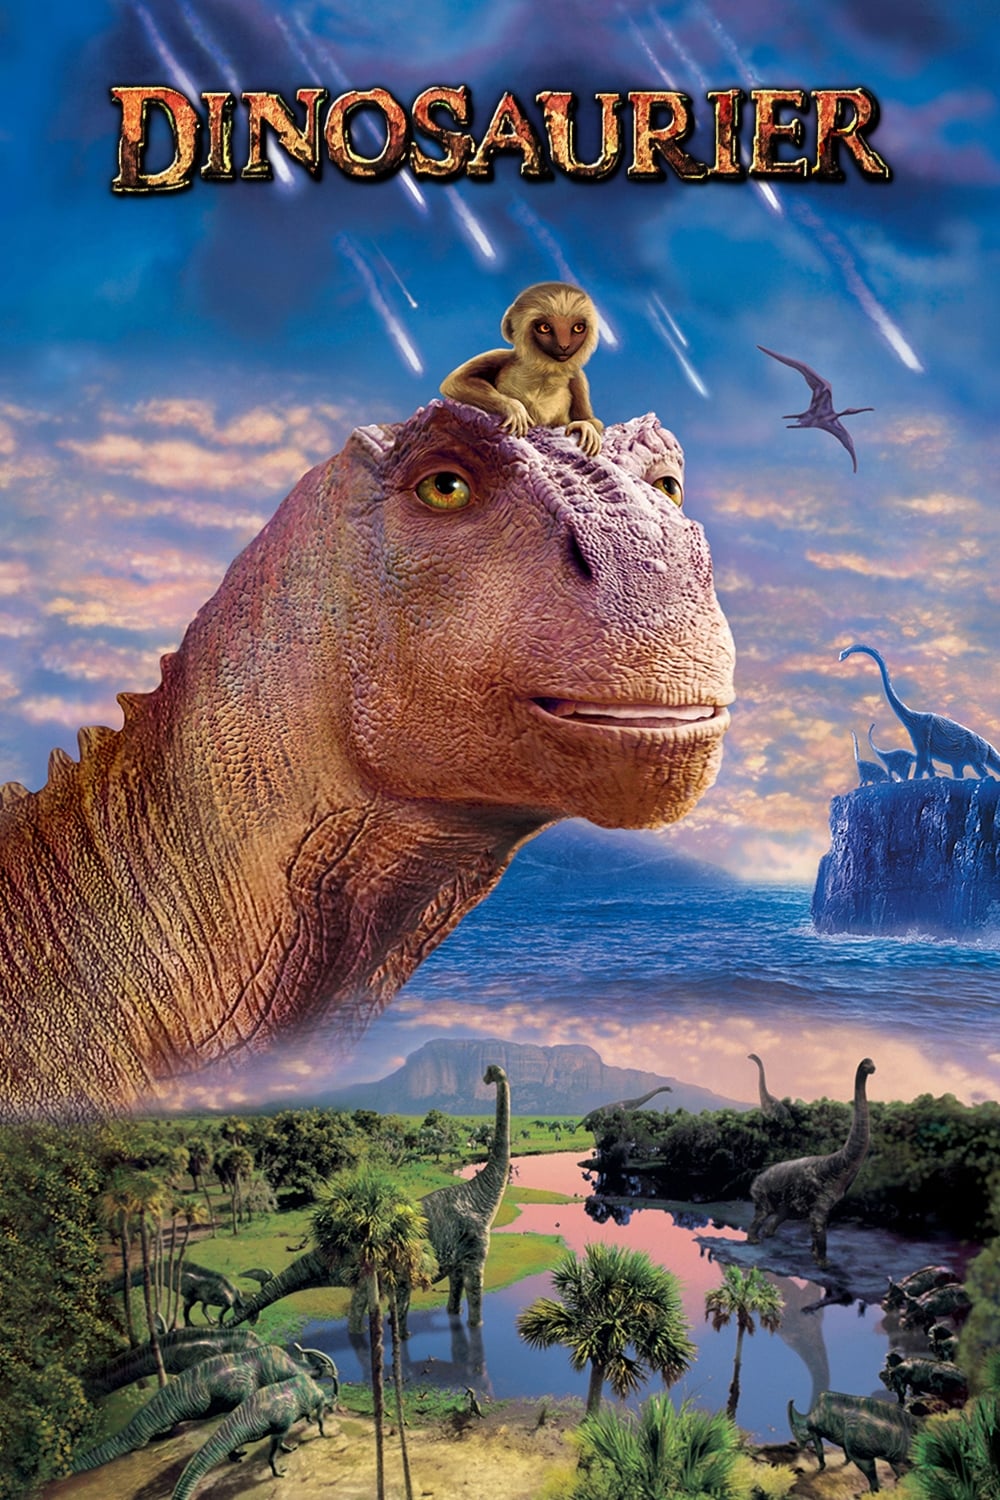 Dinosaurier (2000) Ganzer Film Deutsch